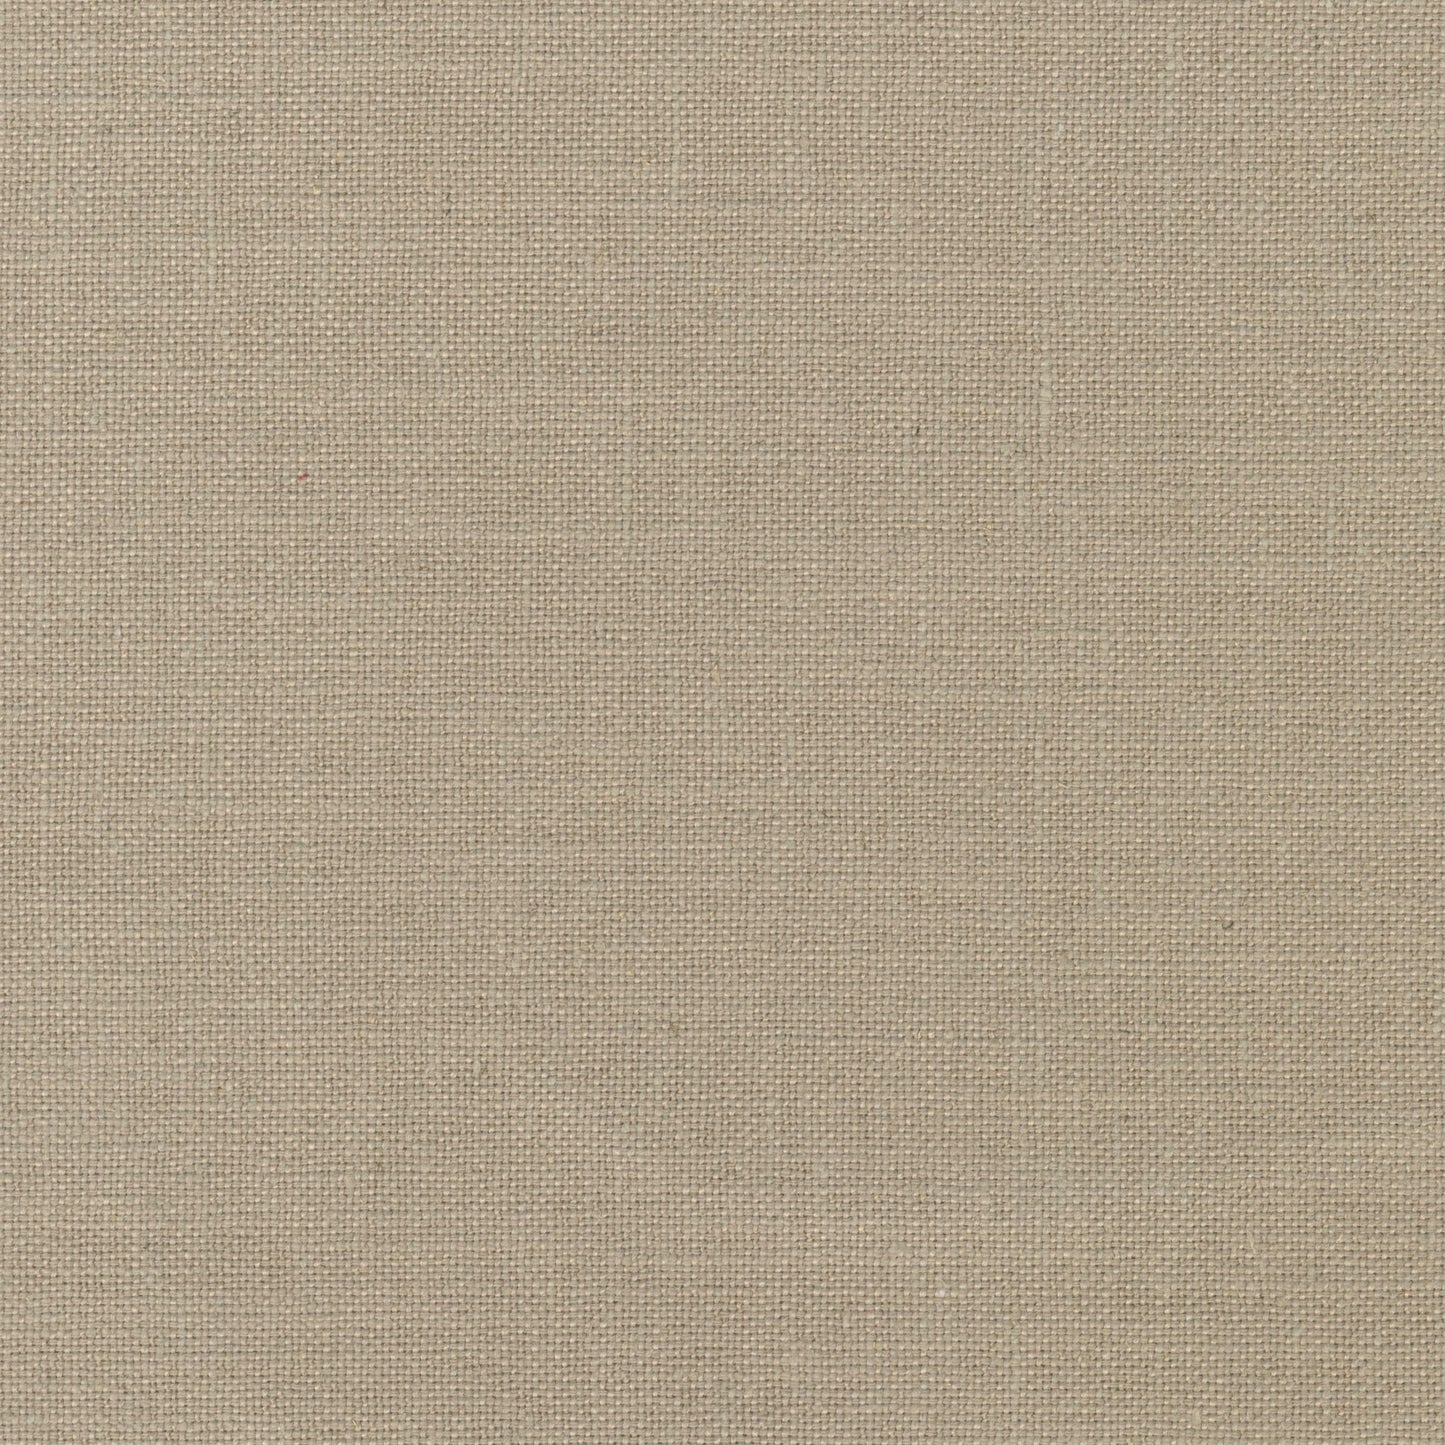 7629-91 Fabric